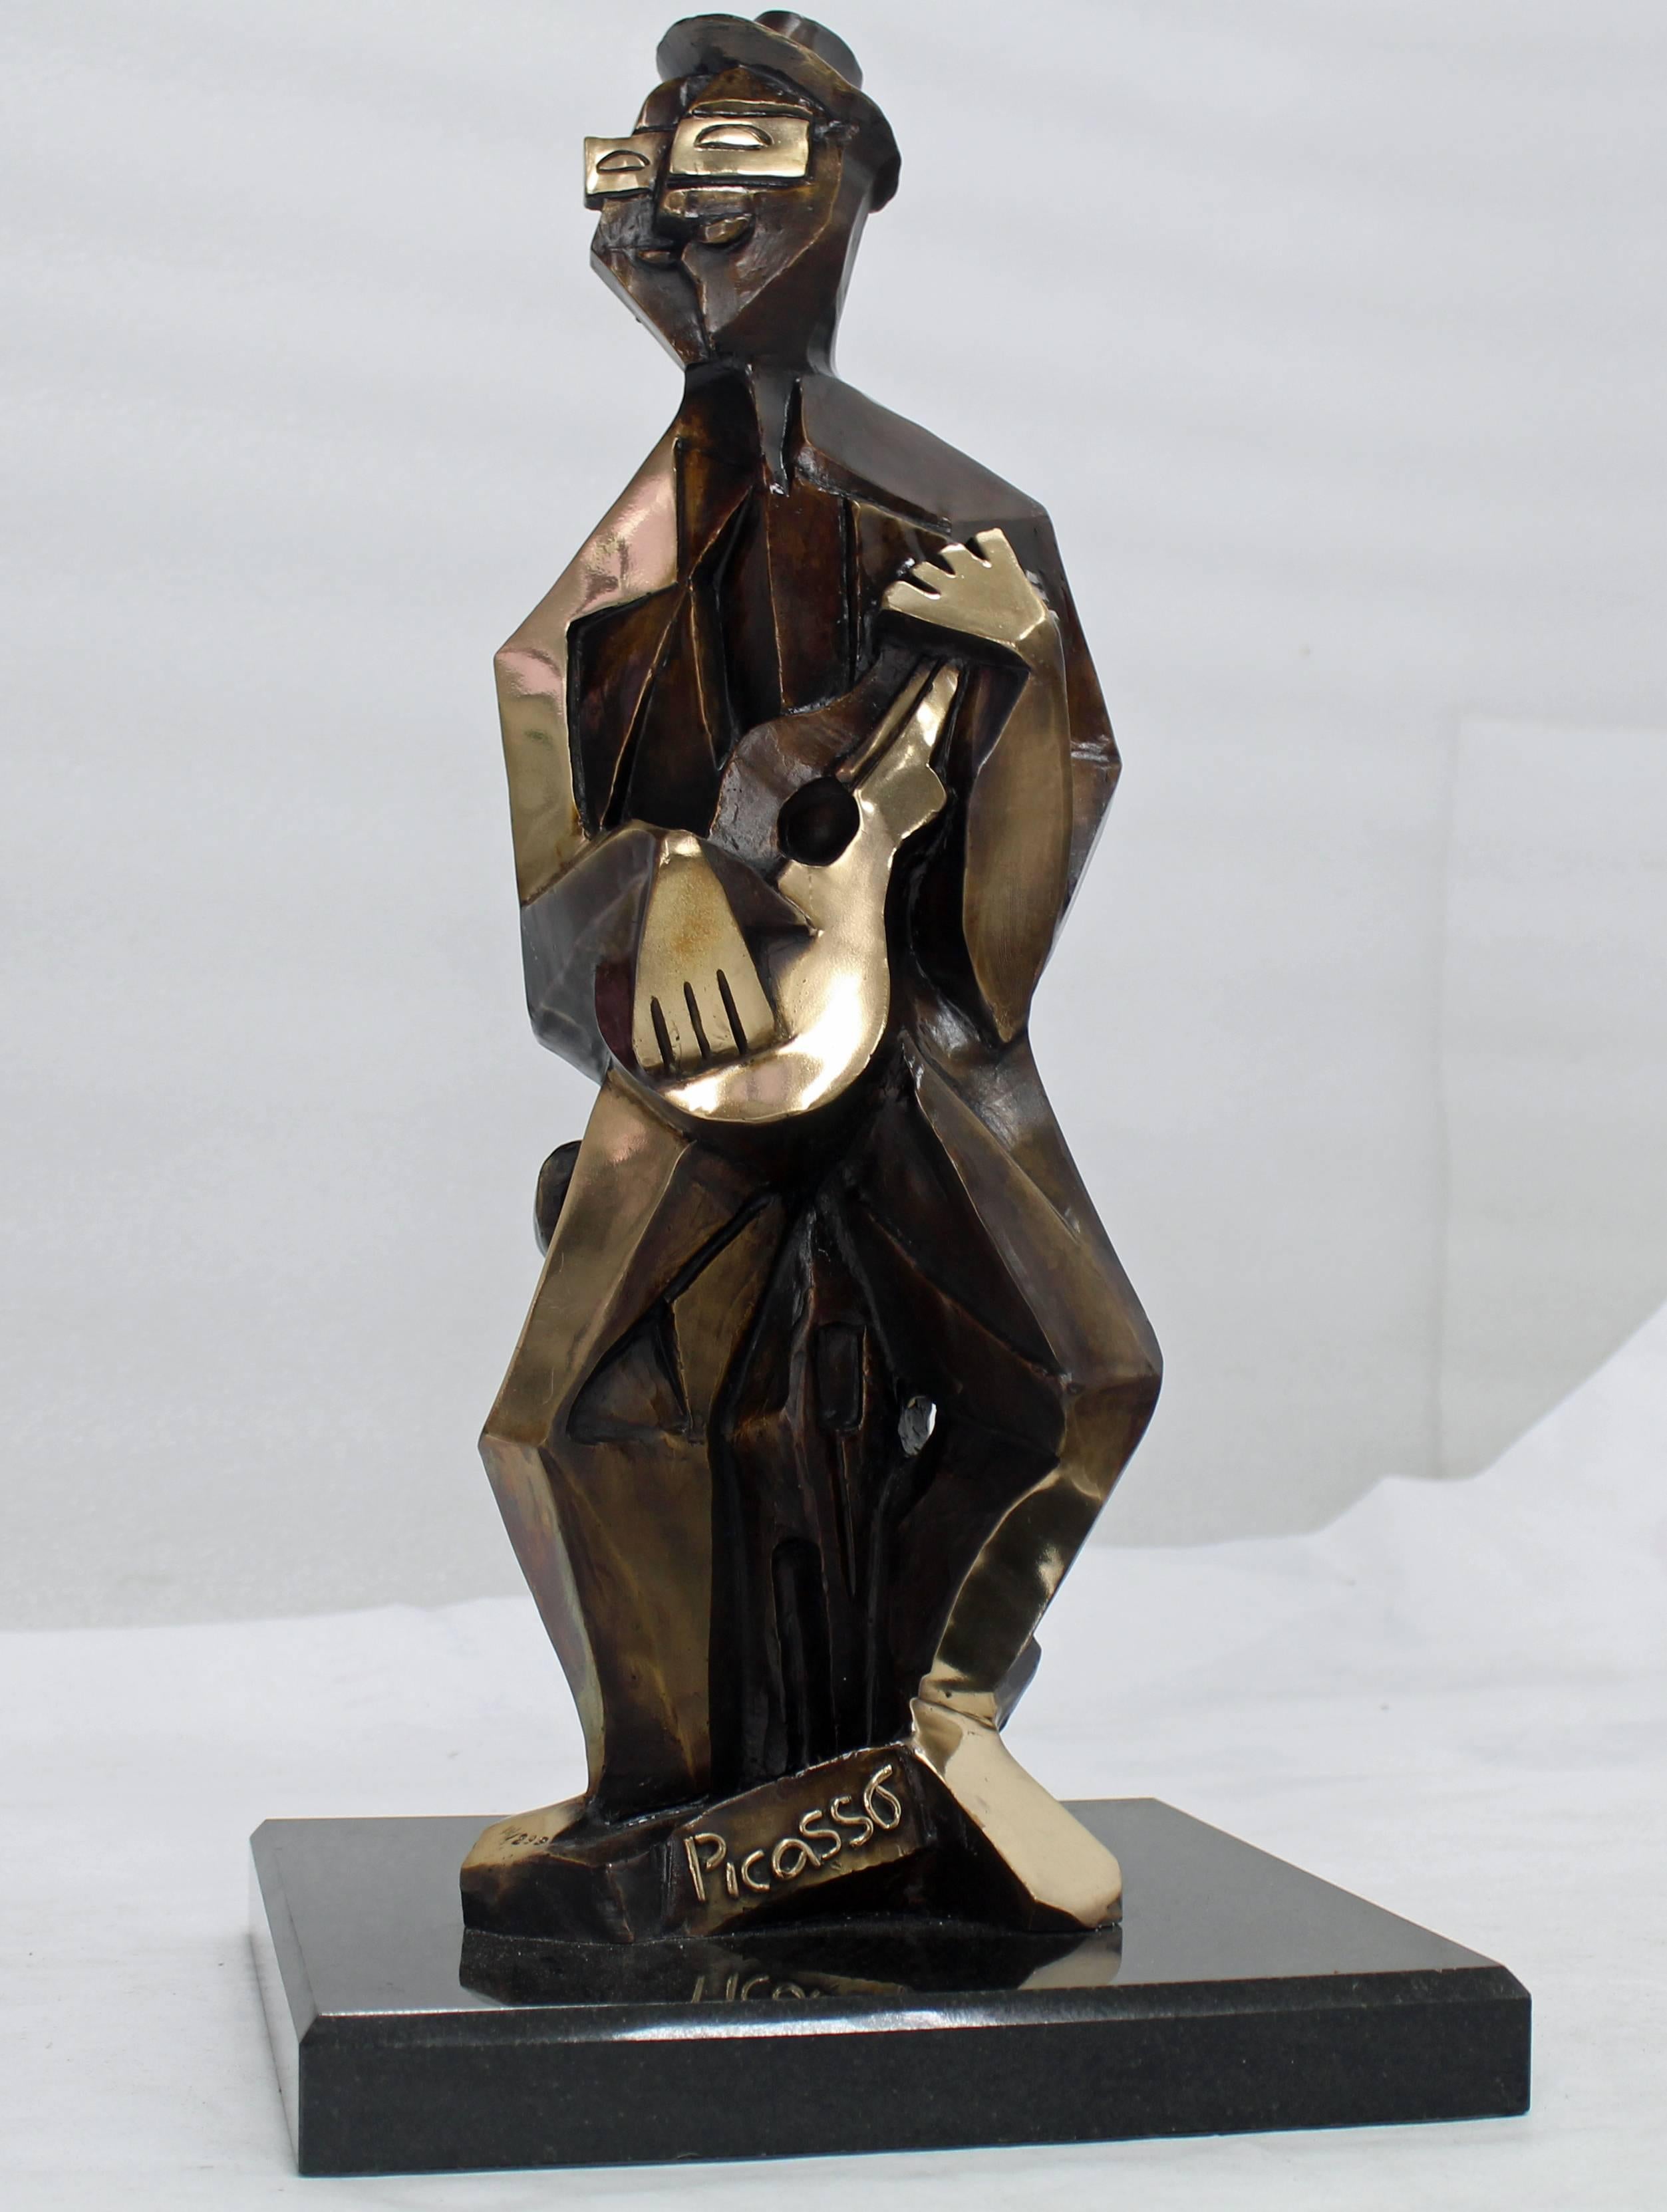 Très belle et lourde sculpture en bronze massif d'un homme jouant de la guitare sur une base carrée en granit. Mesures : 19